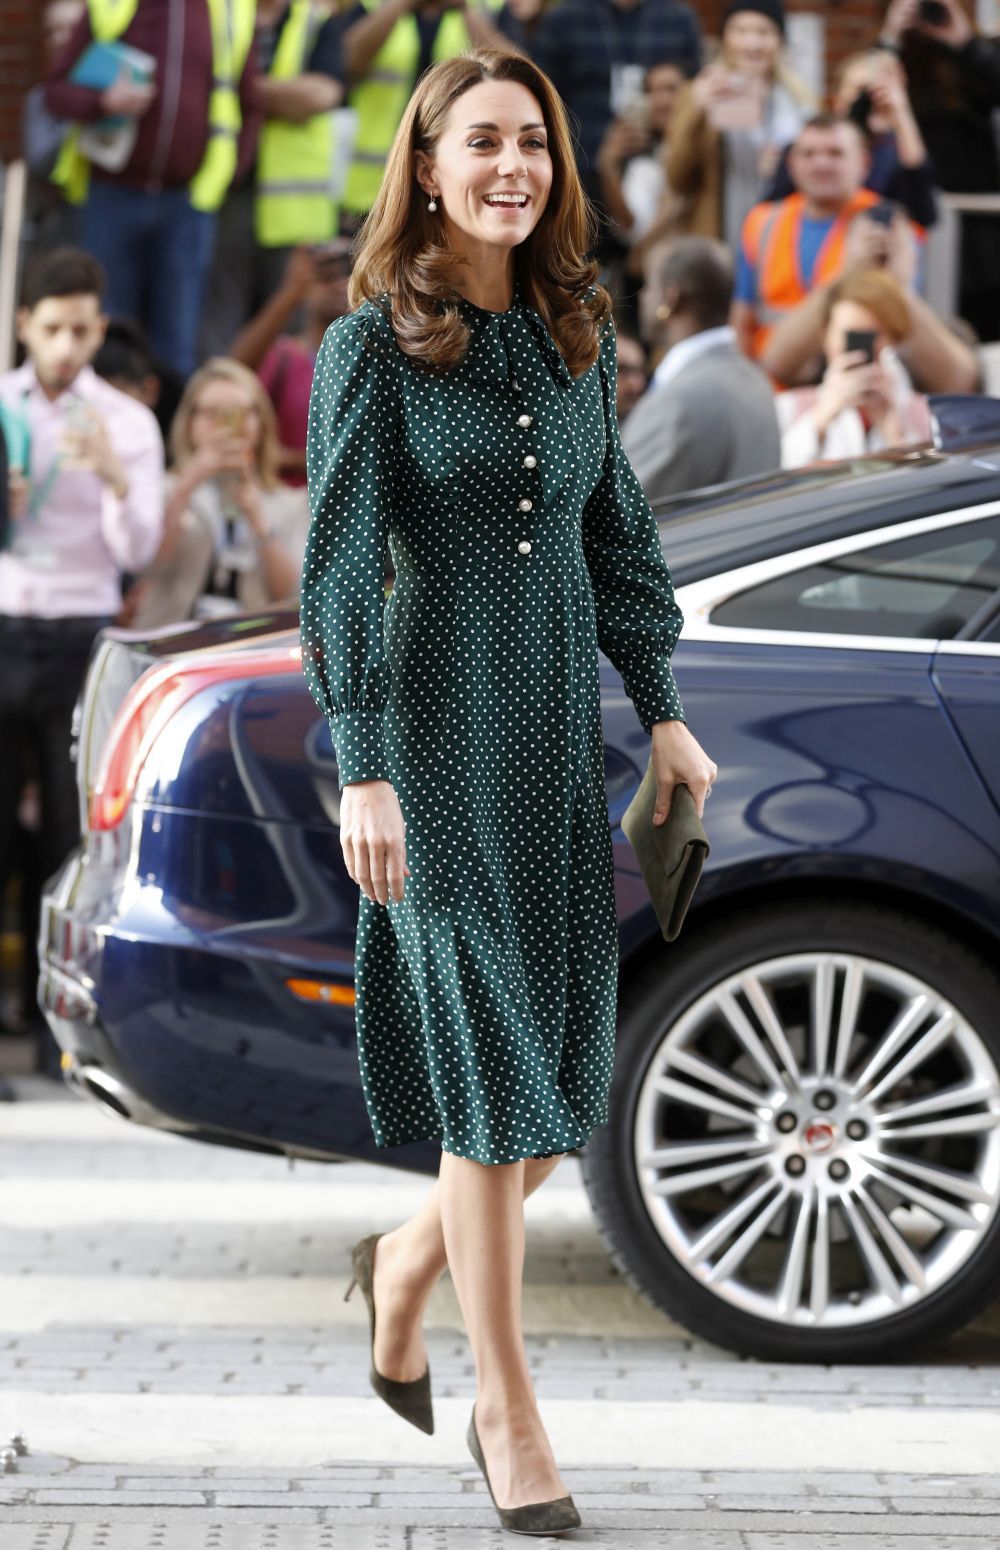 La Duquesa de Cambridge en una de sus últimas apariciones públicas, ¿quién diría que ha pasado por tres embarazos?